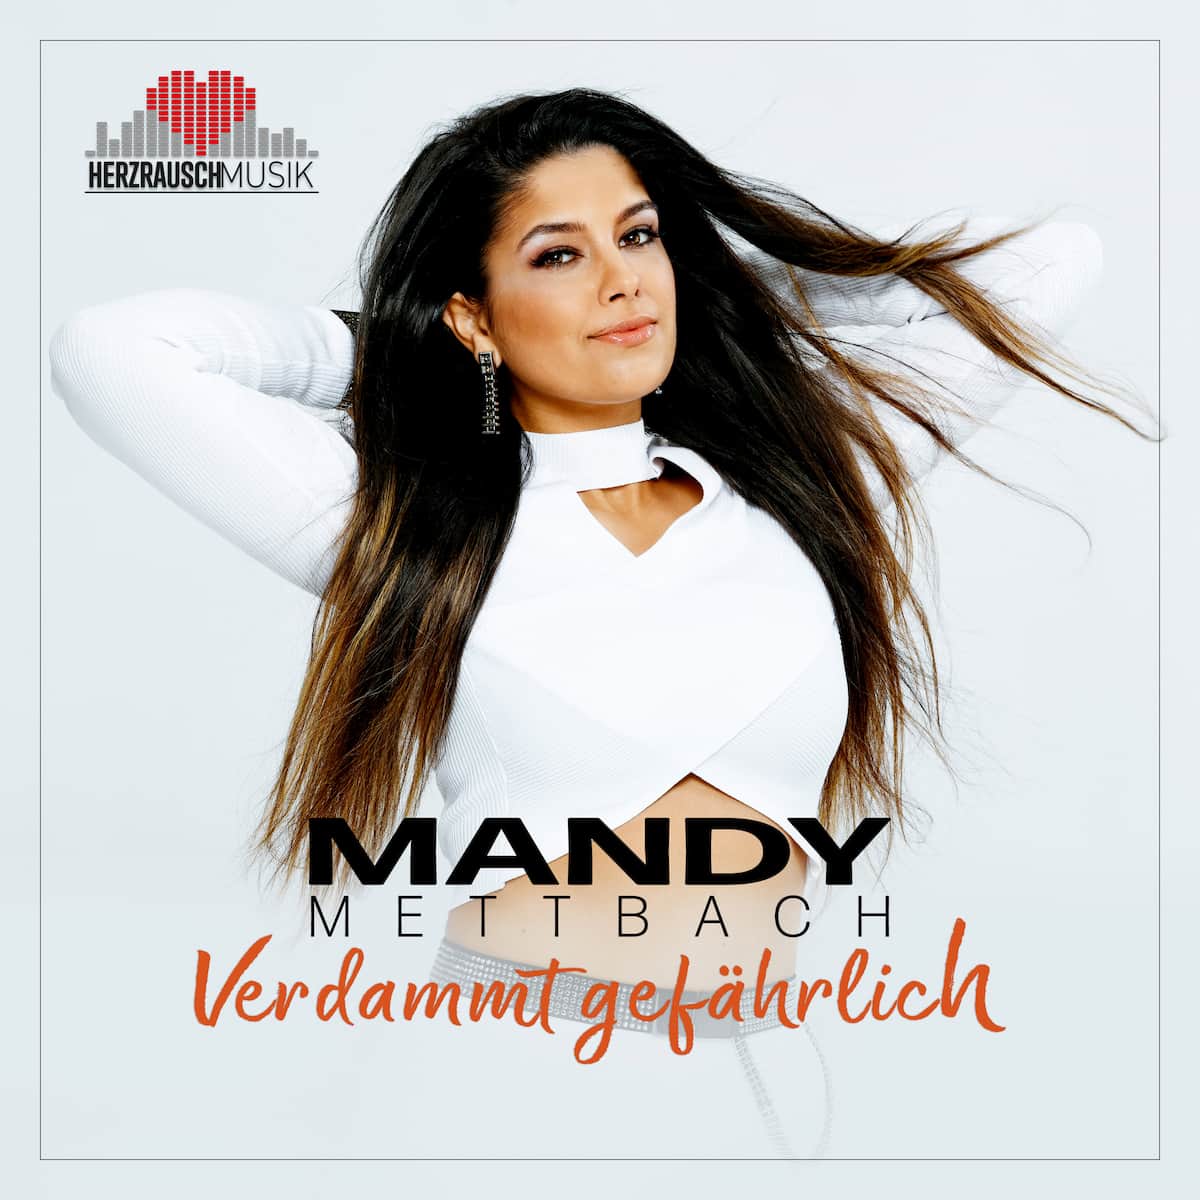 Mandy Mettbach “Verdammt gefährlich” - Single-Cover